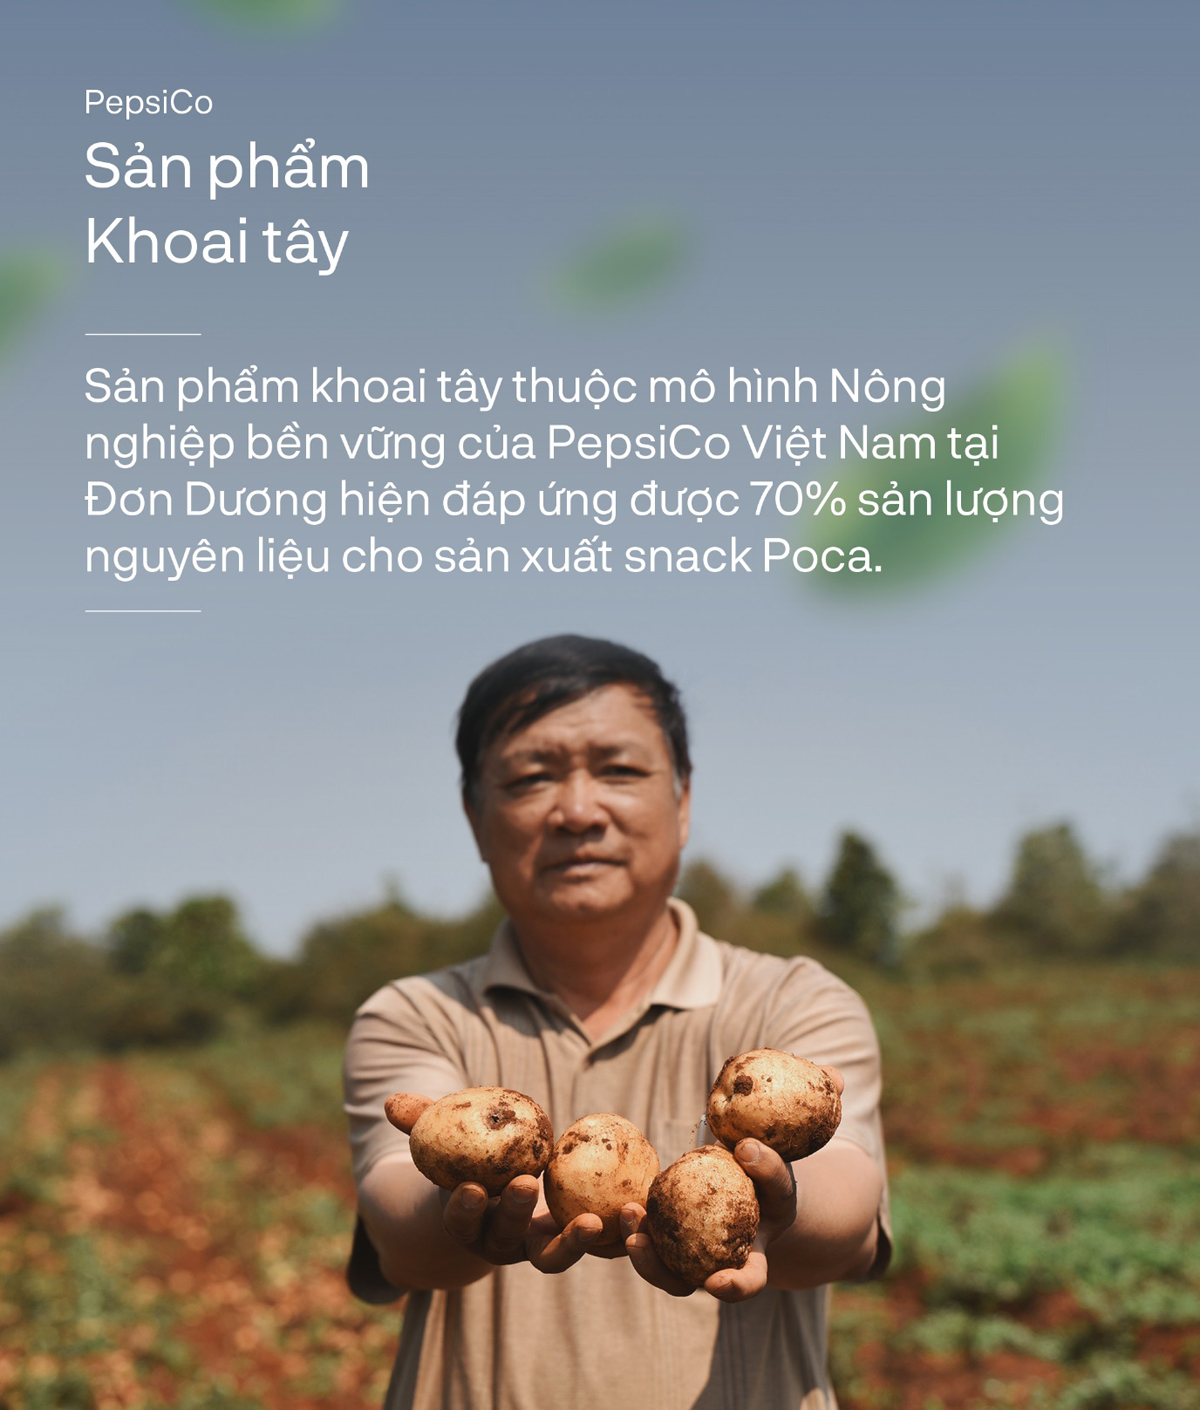 Chân dung nông dân Đơn Dương: Từ việc đau đáu đầu ra đến tích góp được vốn luyến, cải thiện đời sống